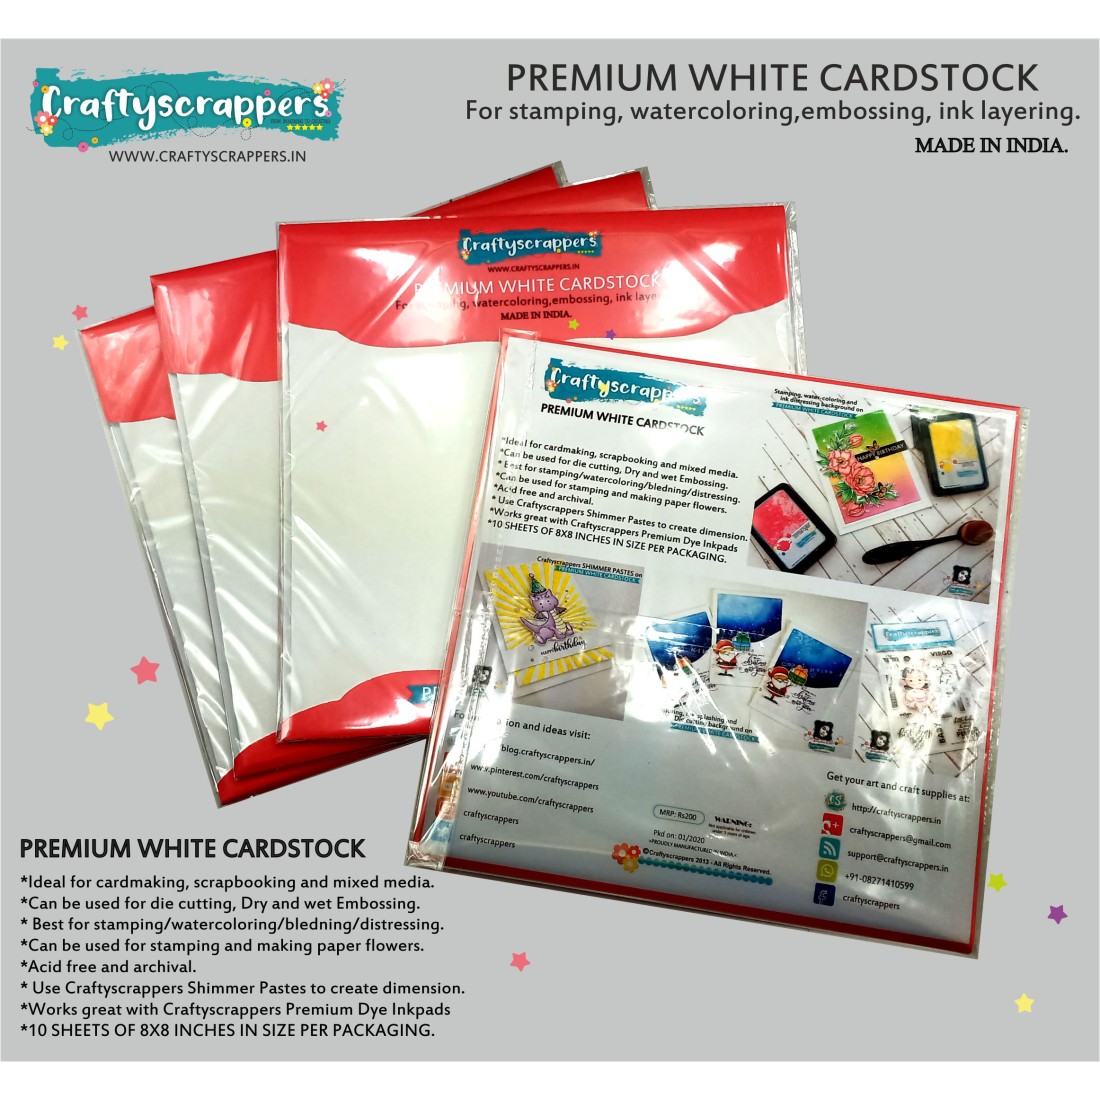 Craftyscrappers - PREMIUM WHITE CARDSTOCK